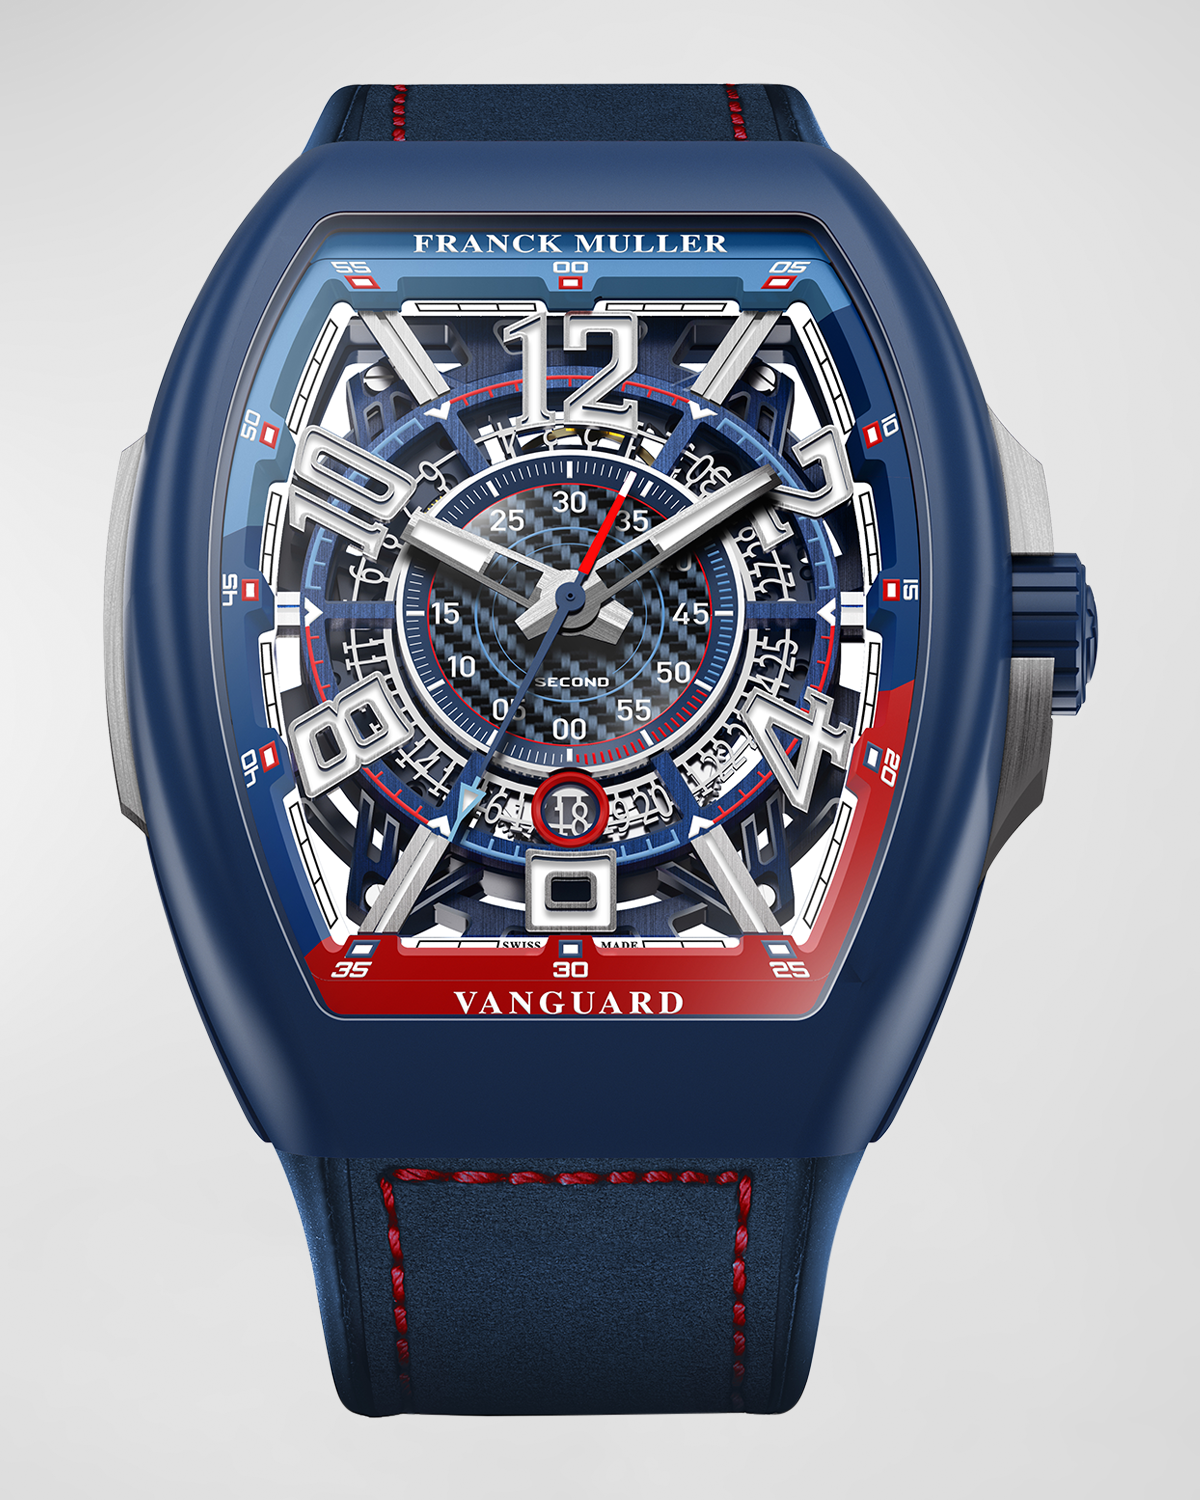 Men's Limited Edition Bill Auberlen Skeleton Automatic Watch in Blue